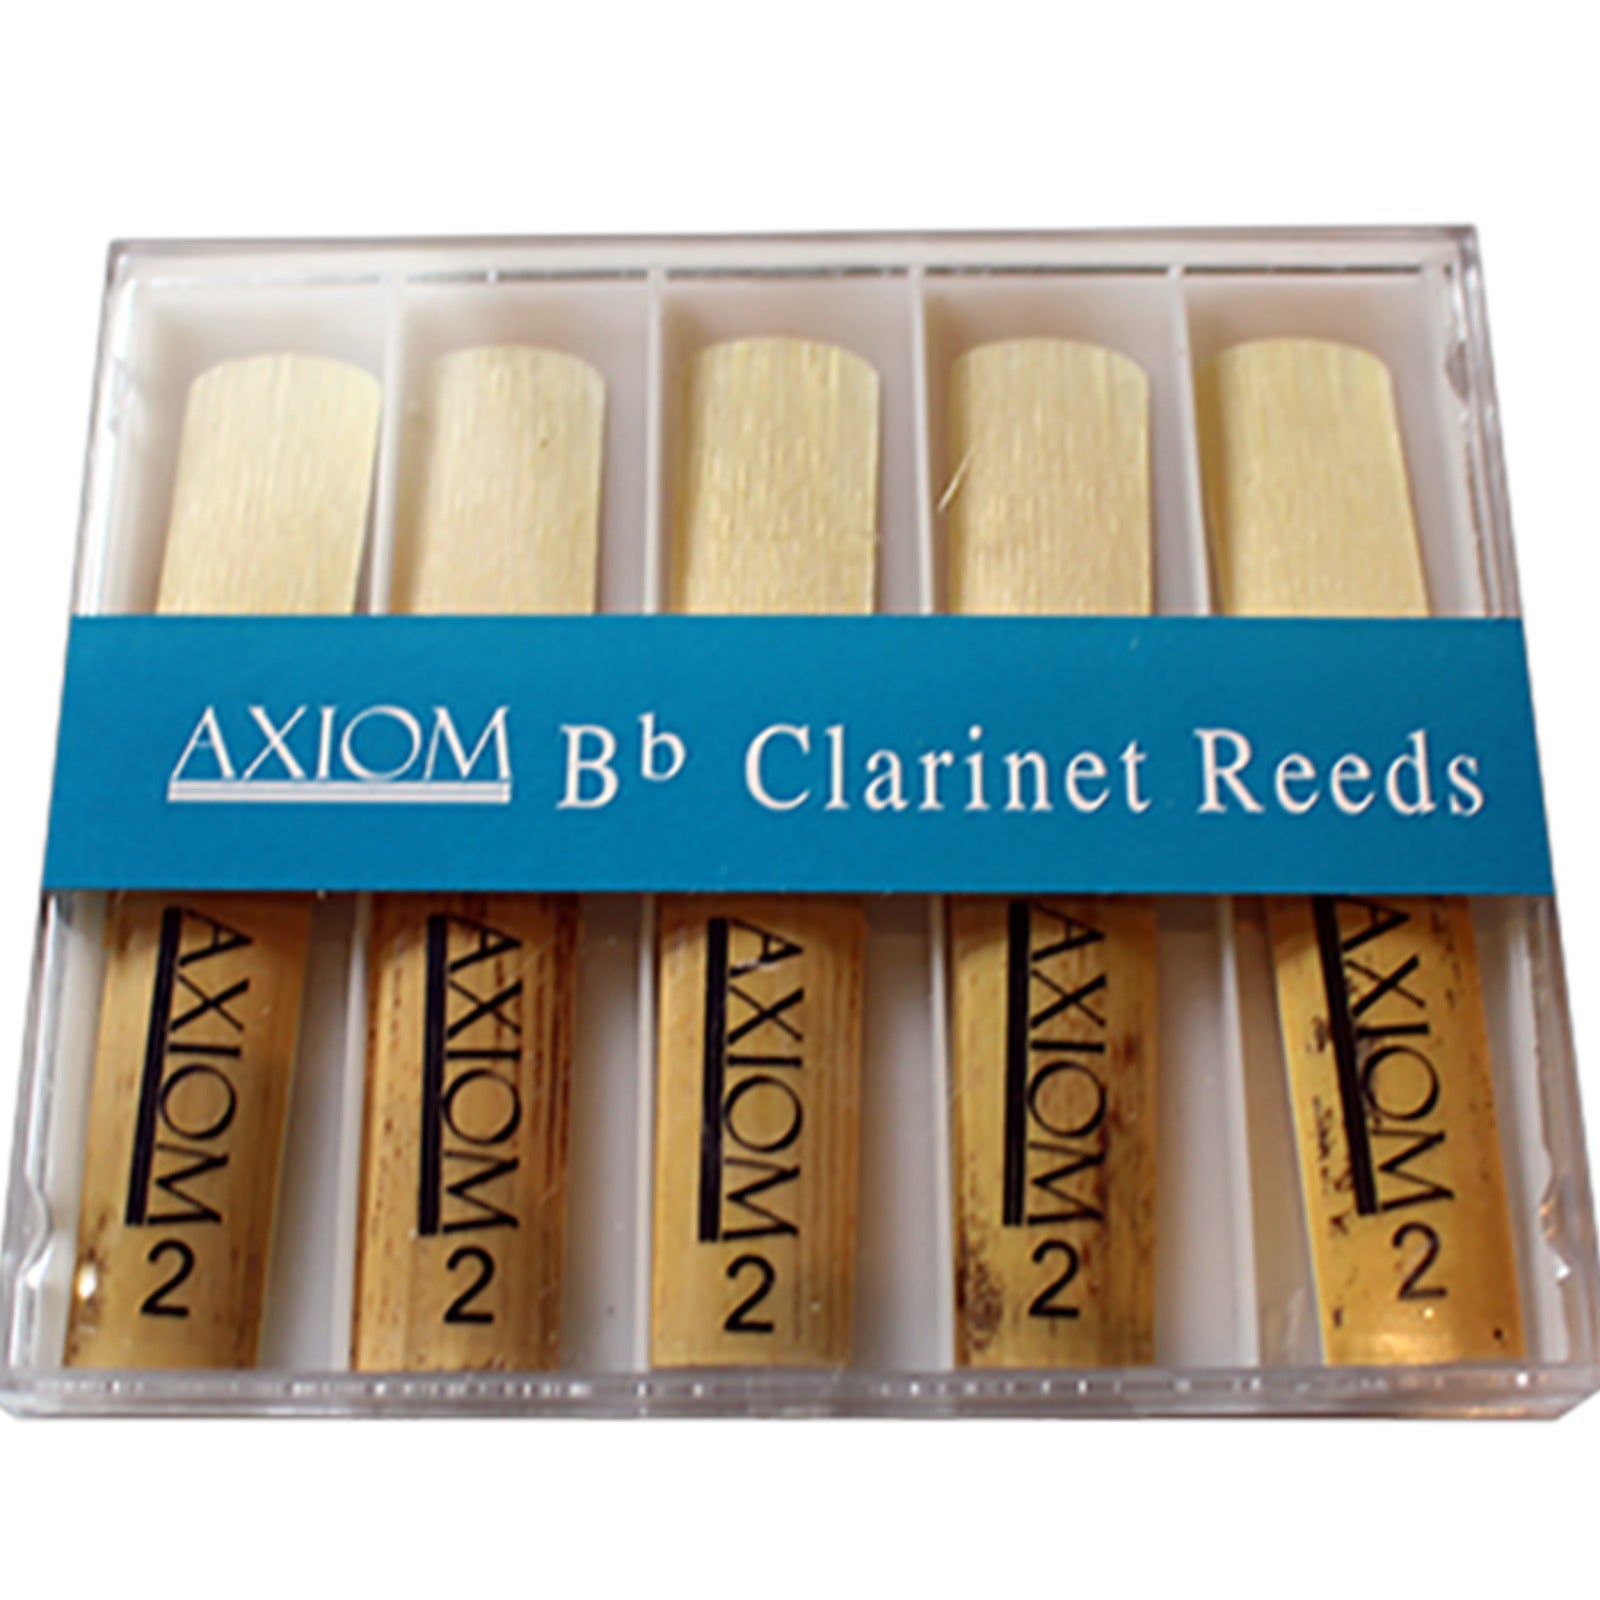 Axiom Clarinet Reed 2.0 - Box of Ten